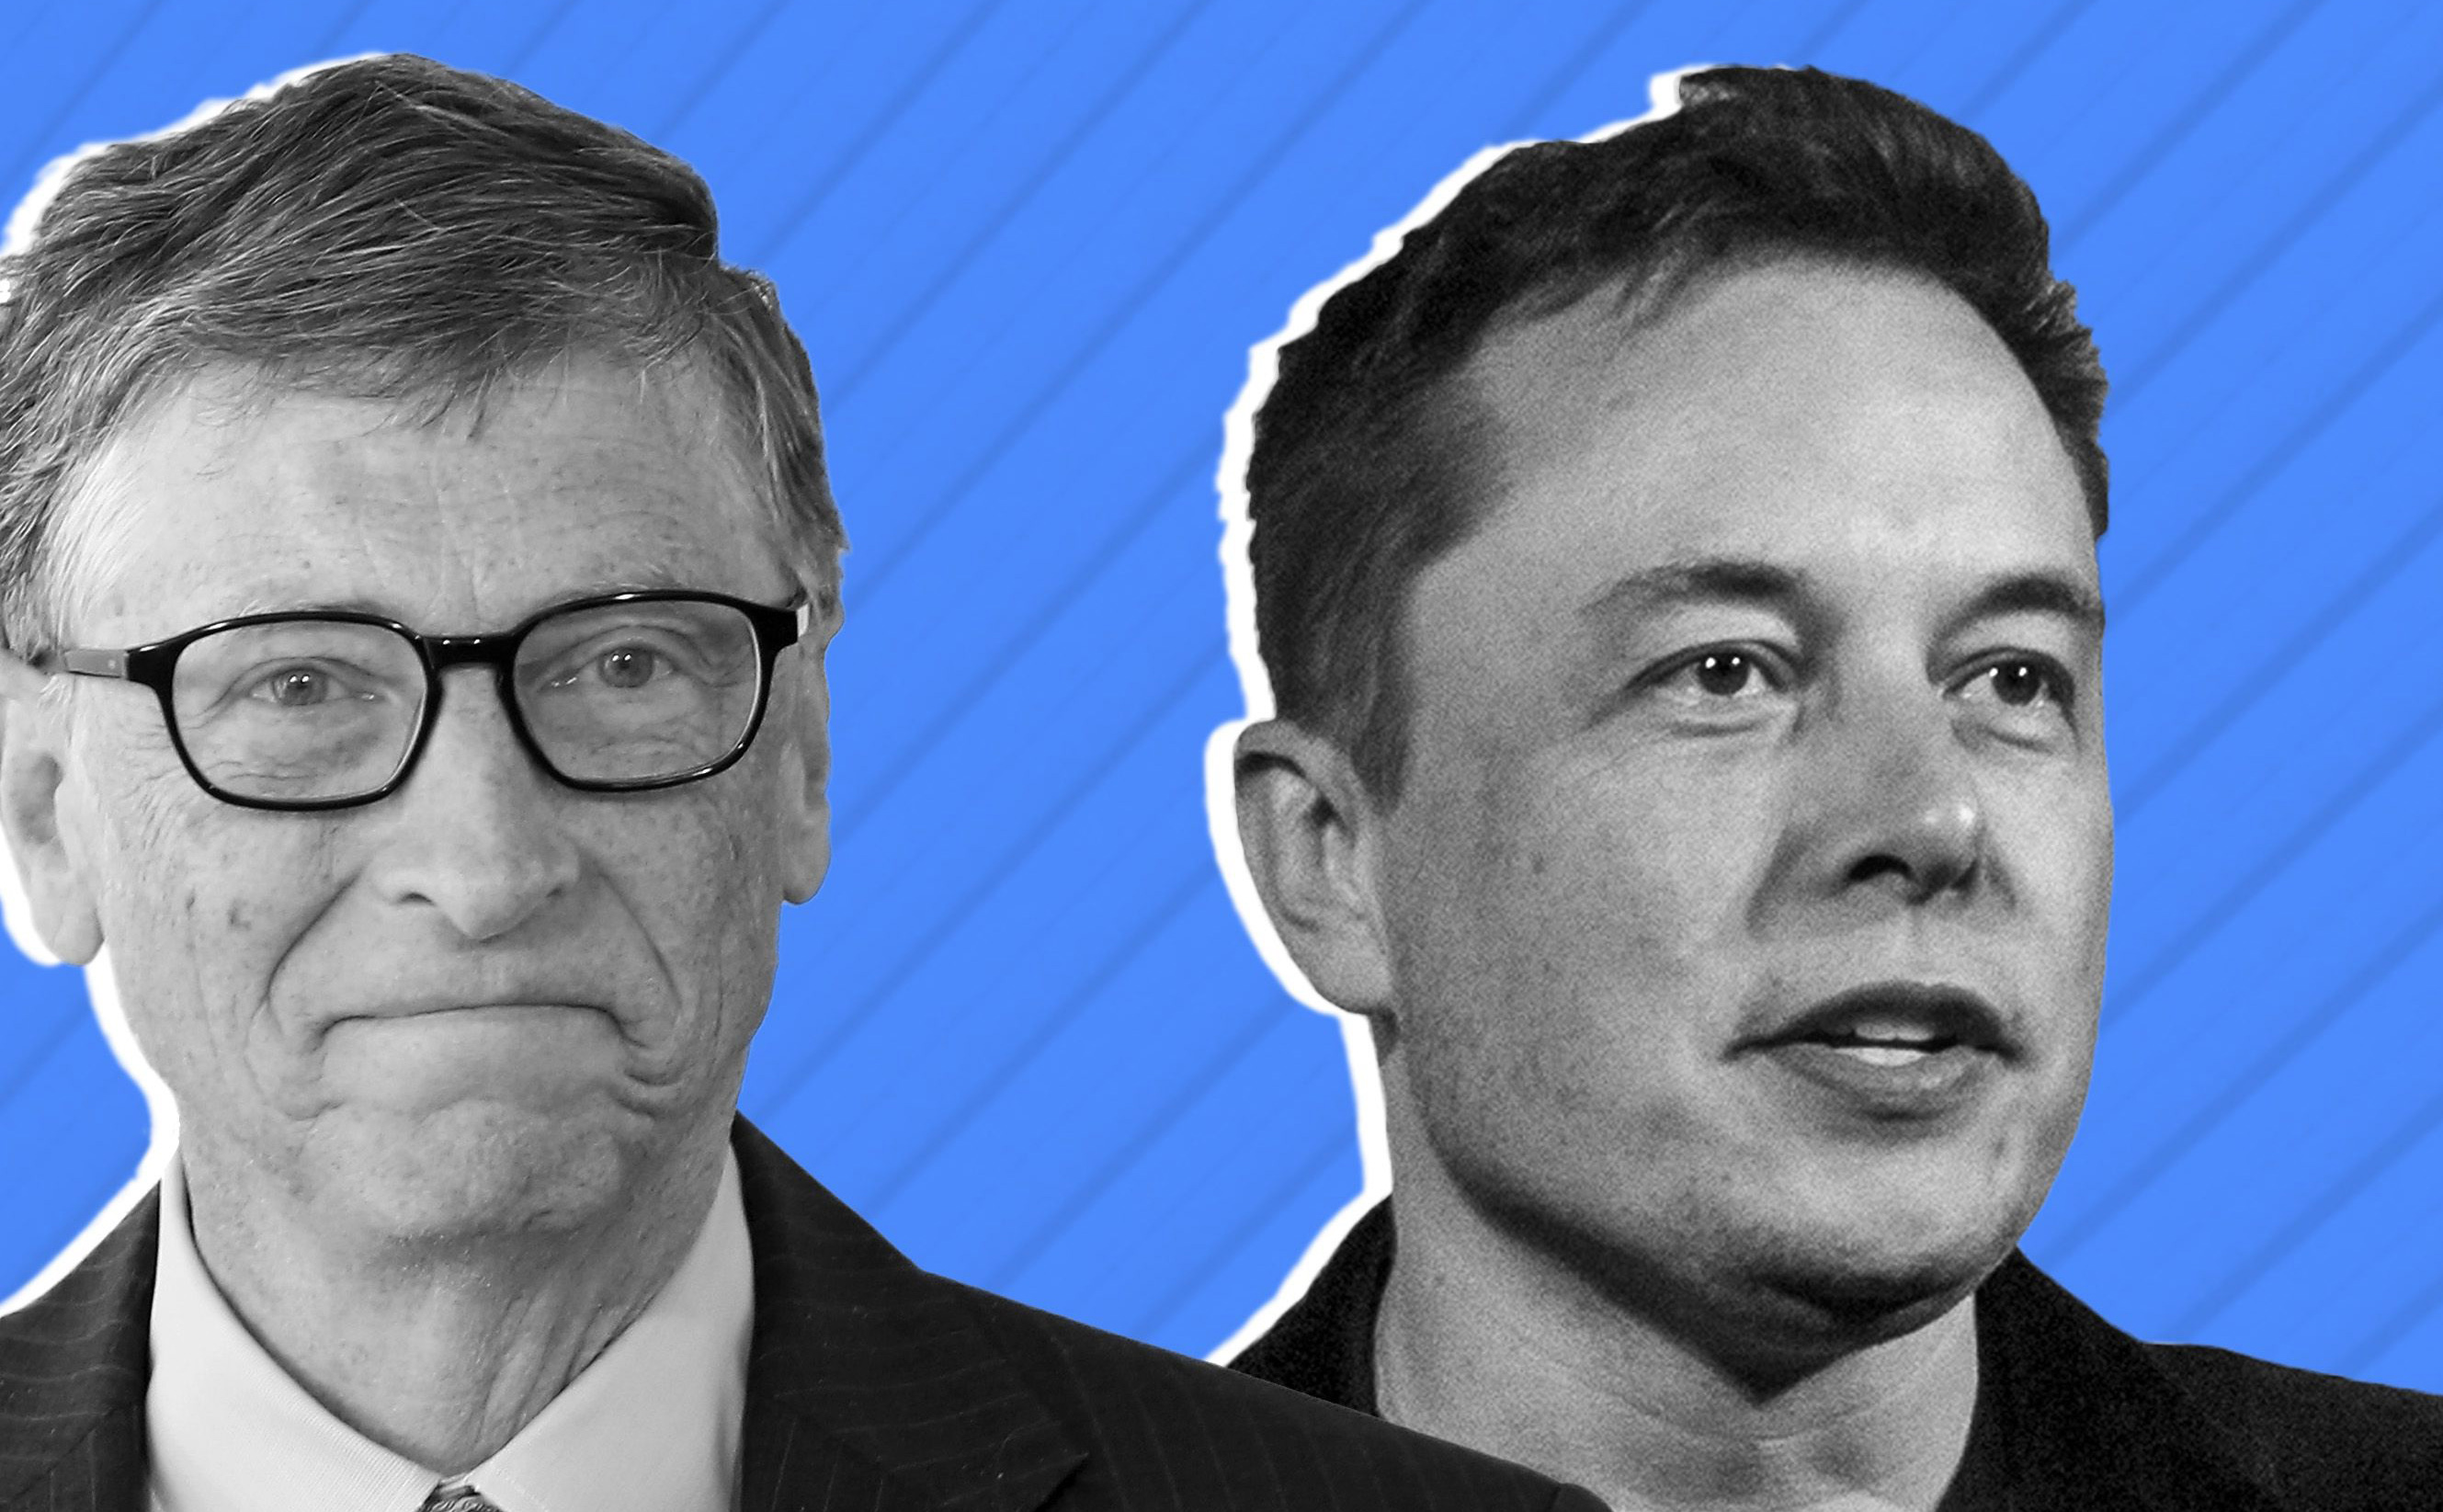 Phản ứng của Bill Gates và Elon Musk trước dịch Corona cho chúng ta một bài học về quản lý cảm xúc